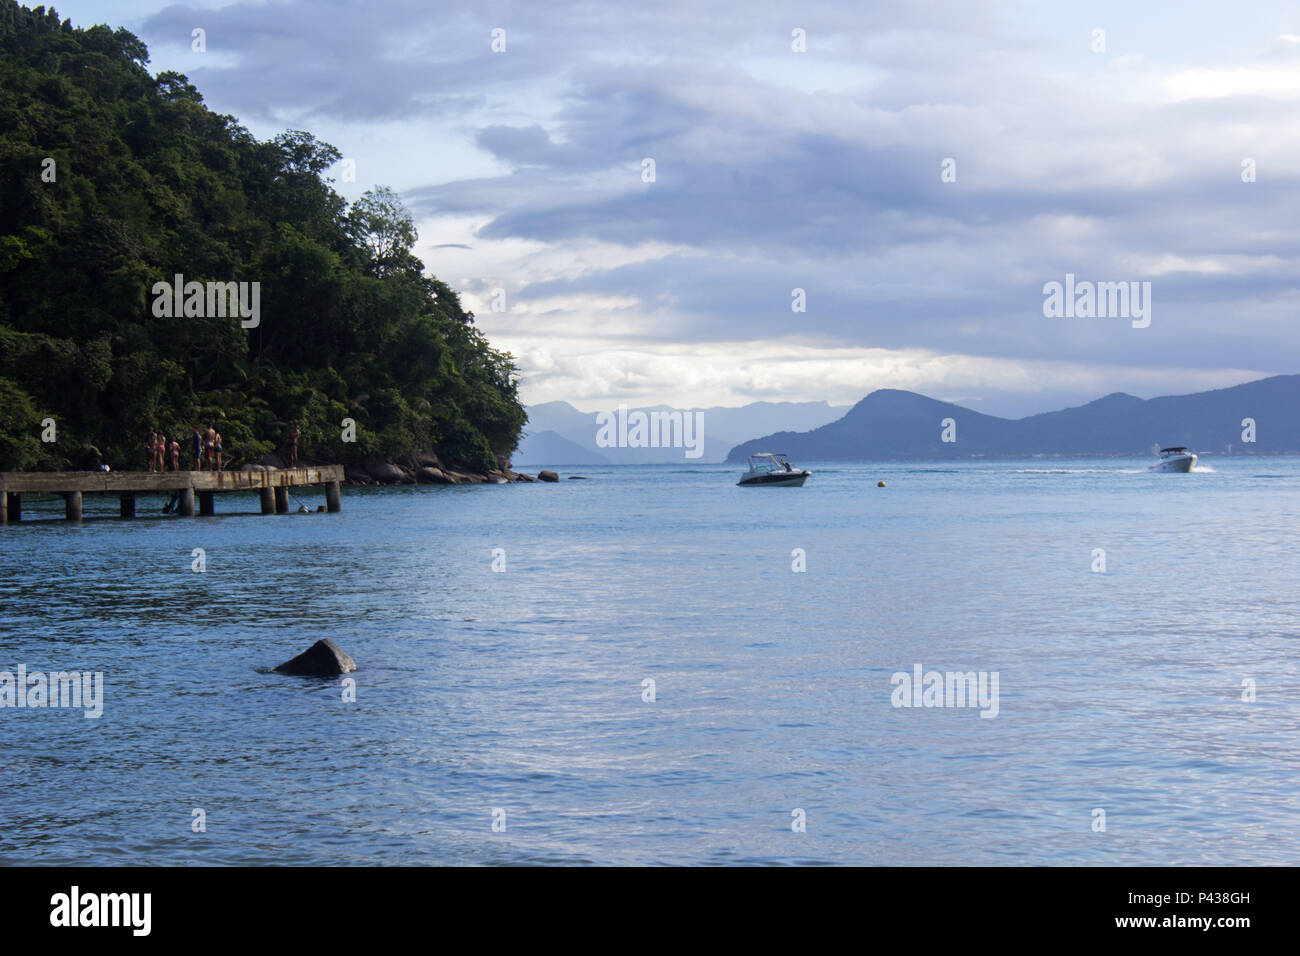 Pessoas sobre pier em costa arborizada com rochas e pedras a beira mar  com barcos navegando e com montanhas ao fundo na praia de Ubatuba, SP, Brasil Stock Photo